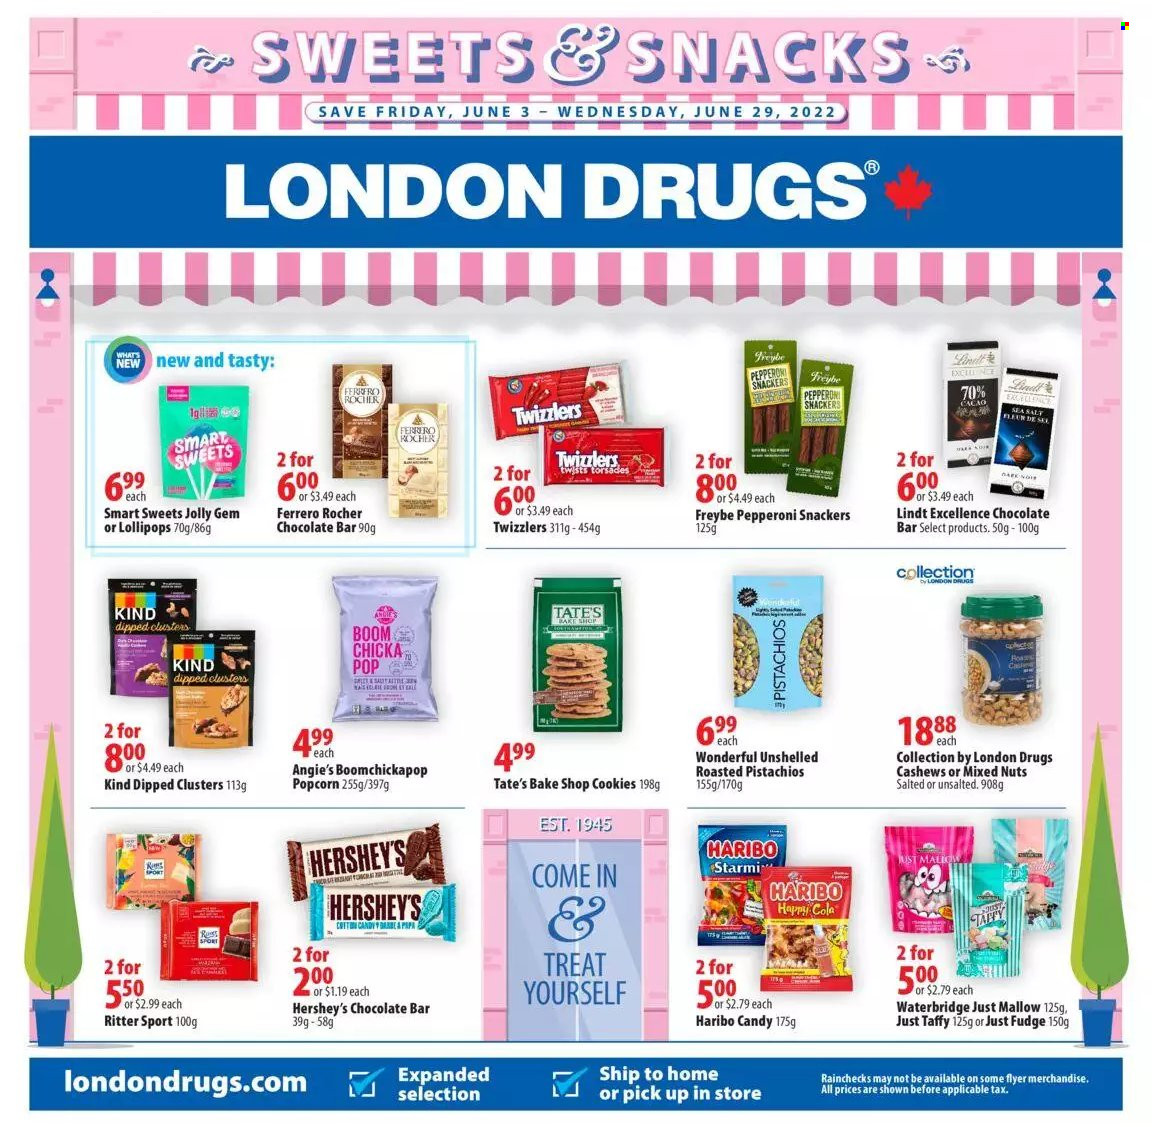 thumbnail - Circulaire London Drugs - 03 Juin 2022 - 29 Juin 2022 - Produits soldés - Ferrero Rocher, cookies, popcorn, cacao, Coca-Cola, Candy, fleur, Ritter Sport, Lindt. Page 1.